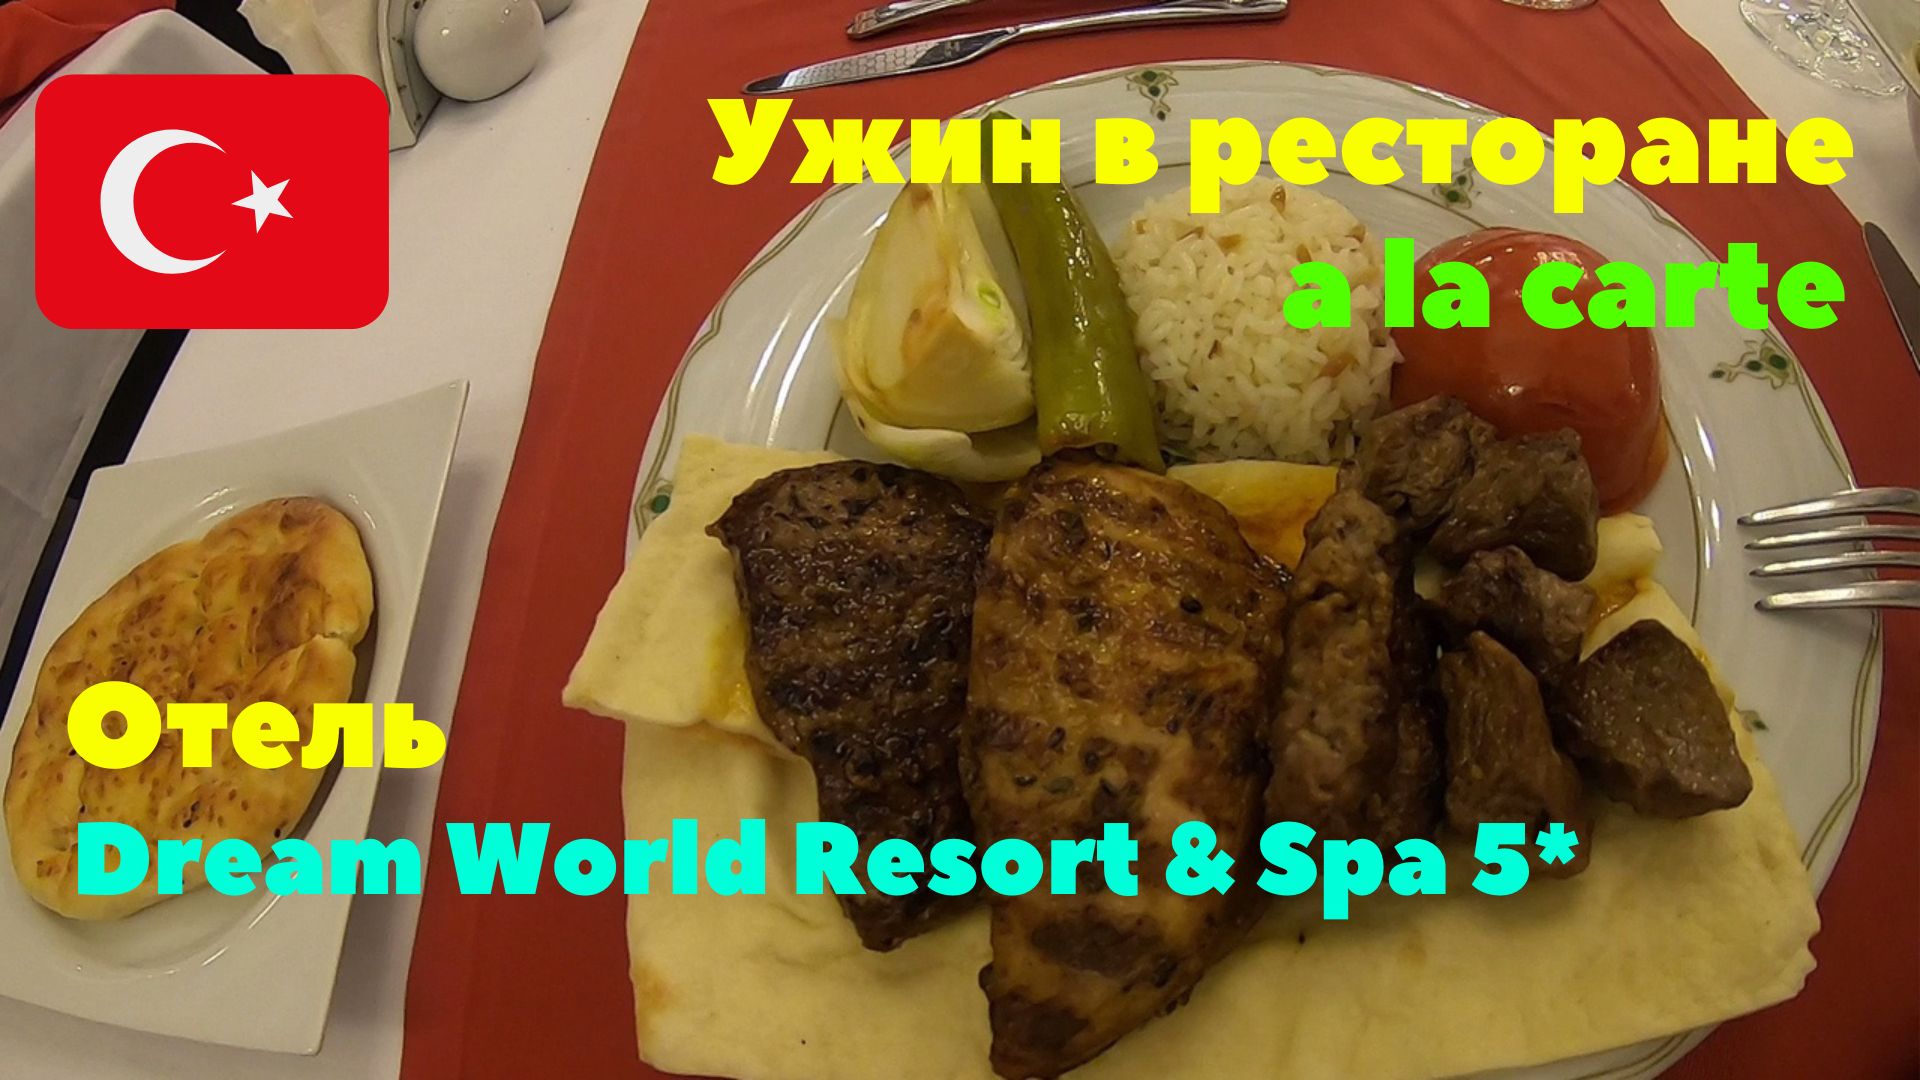 Отель Dream World Resort & Spa 5*. Ужин в ресторане A la carte. Стоит ли посетить? Турция 2020